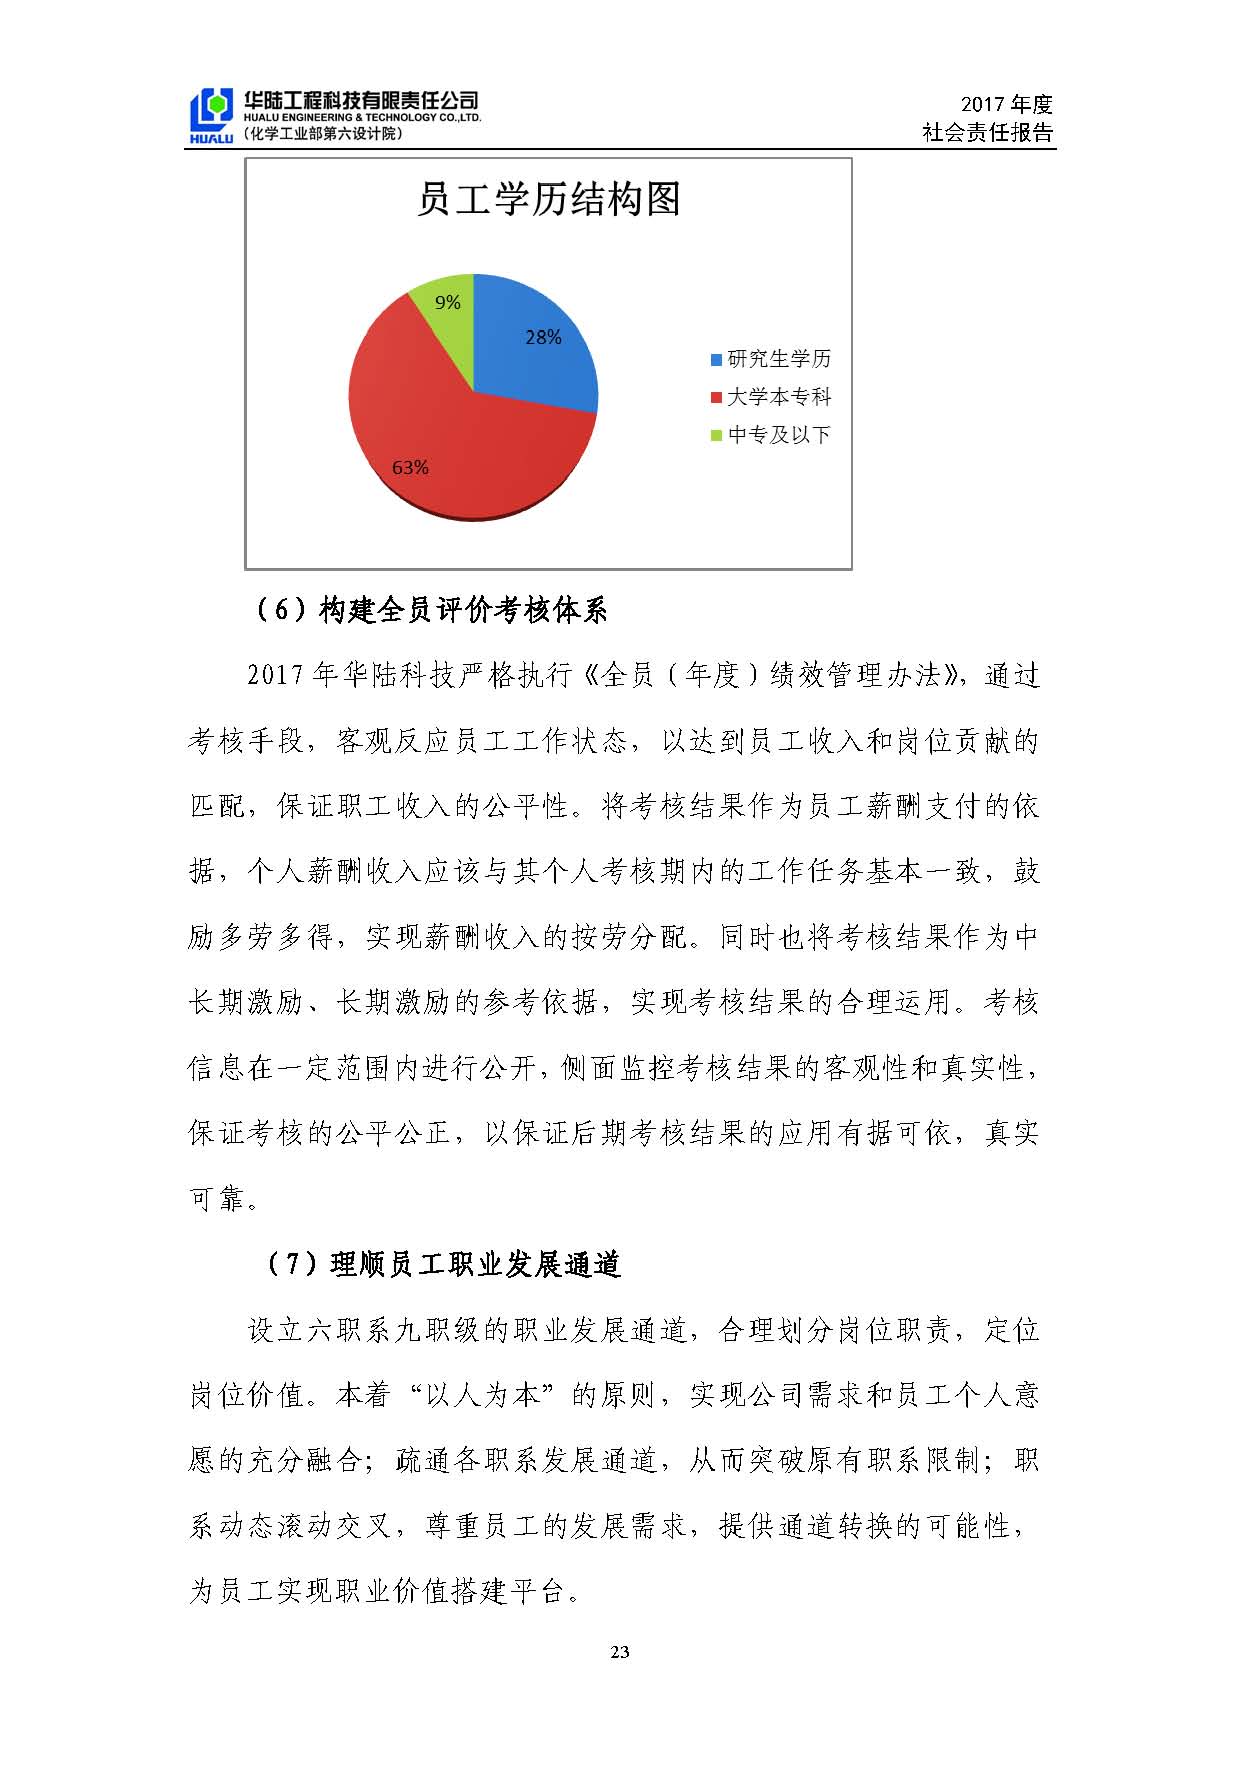 华陆工程科技有限责任公司2017年社会责任报告_页面_24.jpg